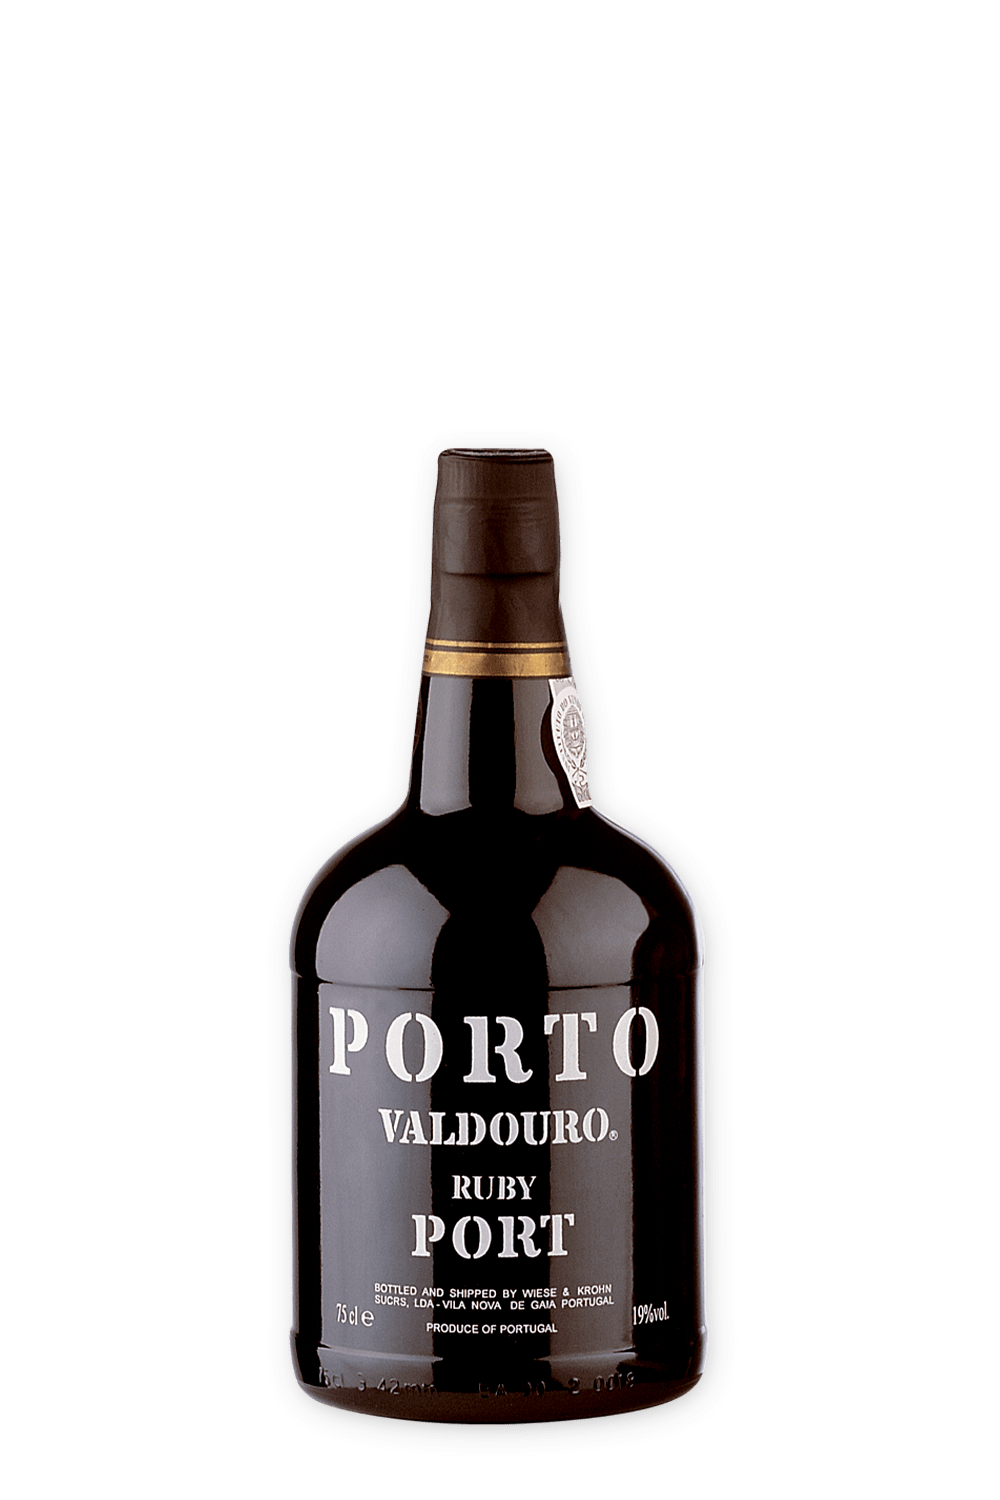 Valdouro-Porto-Ruby